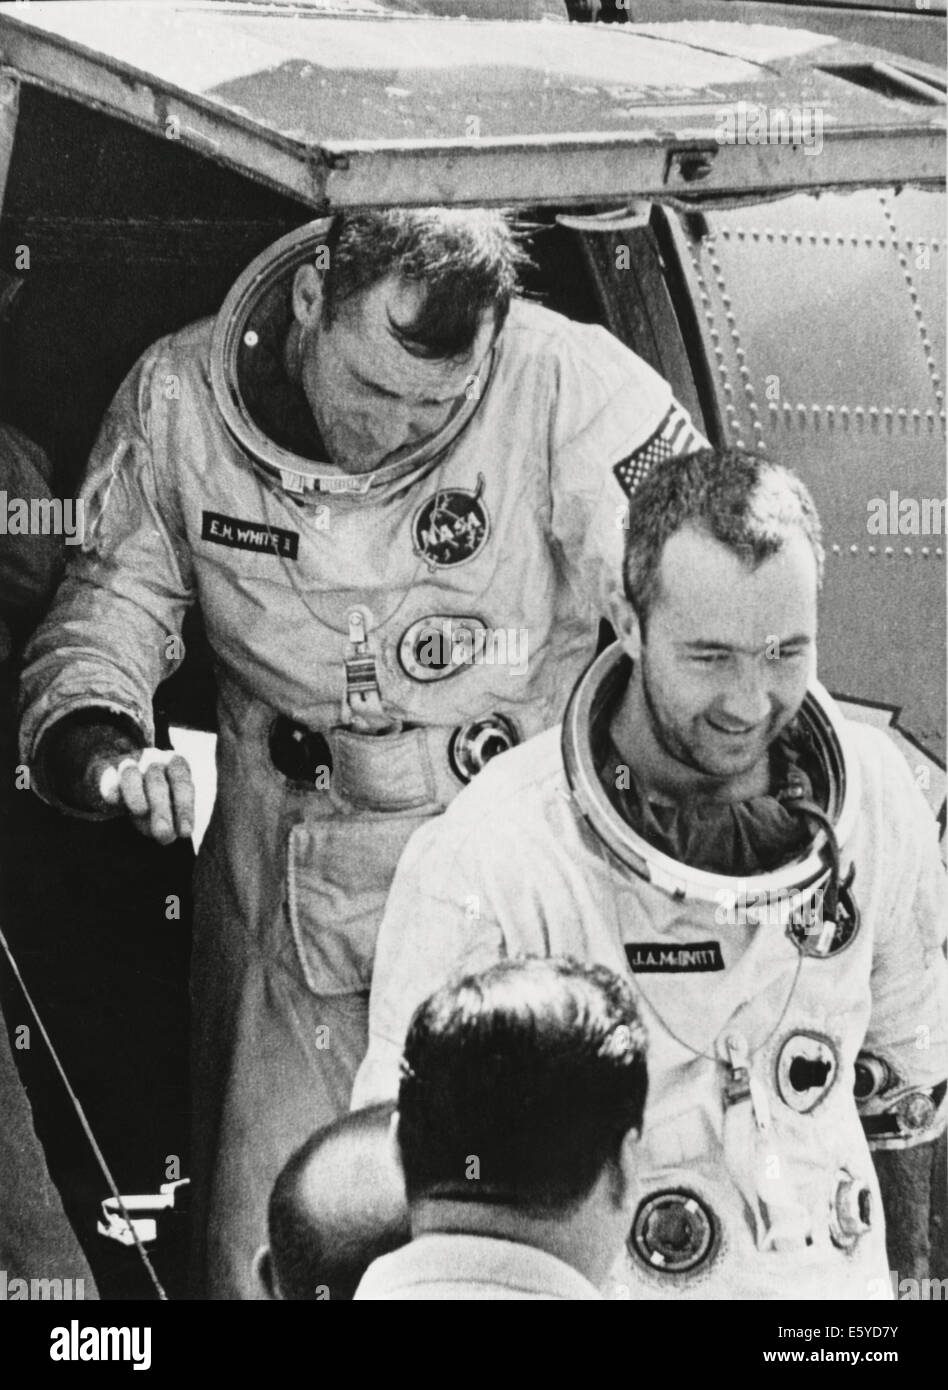 Gli astronauti della NASA James McDivitt (anteriore) e Edward II bianco dopo il completamento della Gemini IV missione spaziale, 7 giugno 1965 Foto Stock